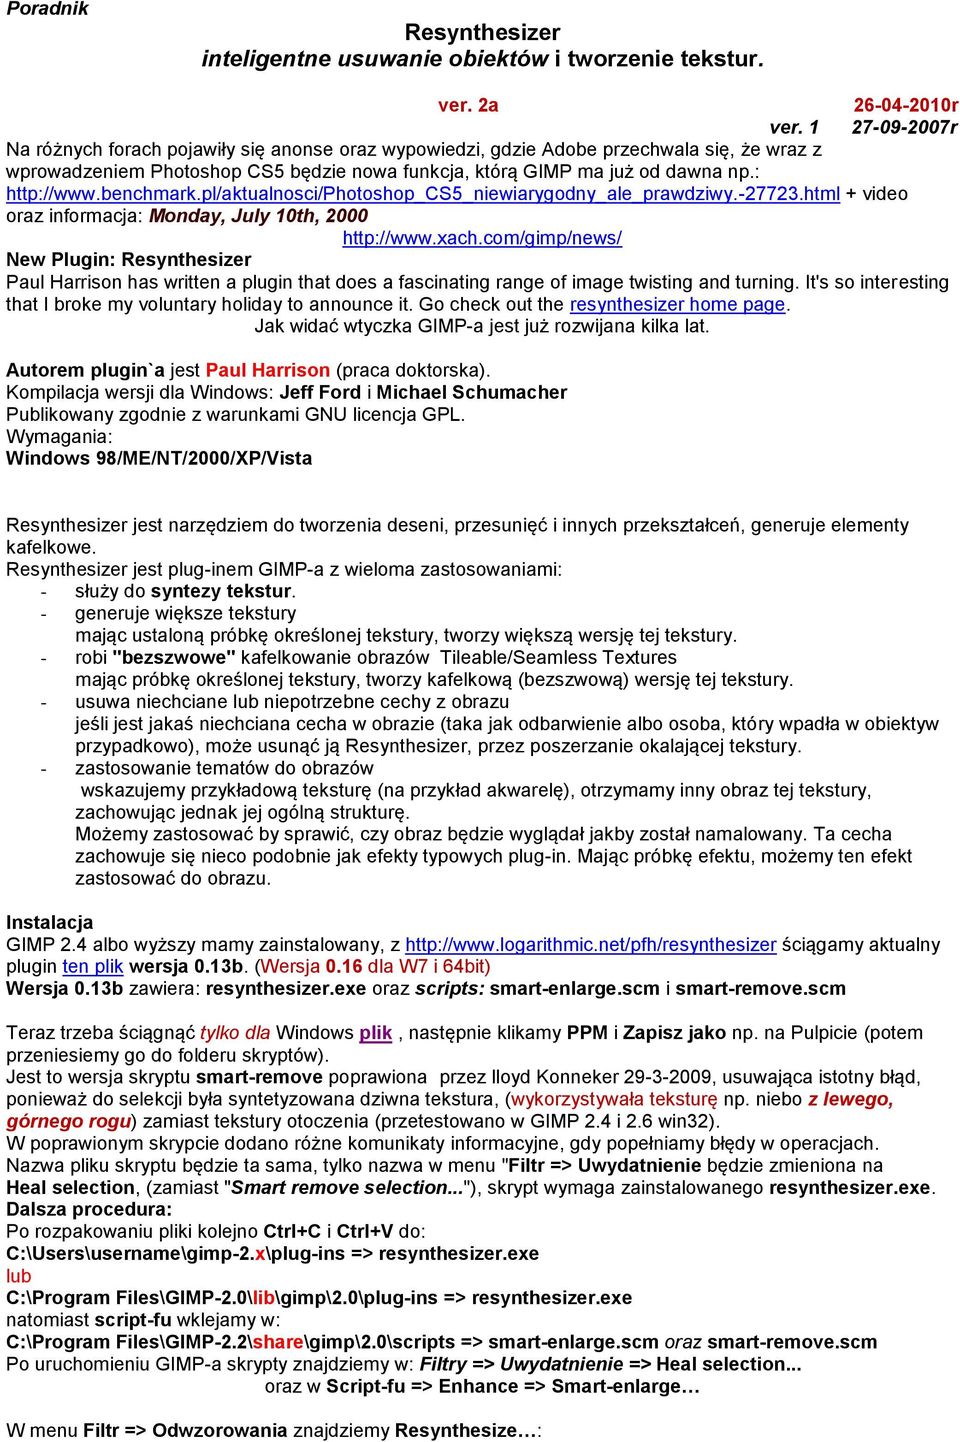 benchmark.pl/aktualnosci/photoshop_cs5_niewiarygodny_ale_prawdziwy.-27723.html + video oraz informacja: Monday, July 10th, 2000 http://www.xach.